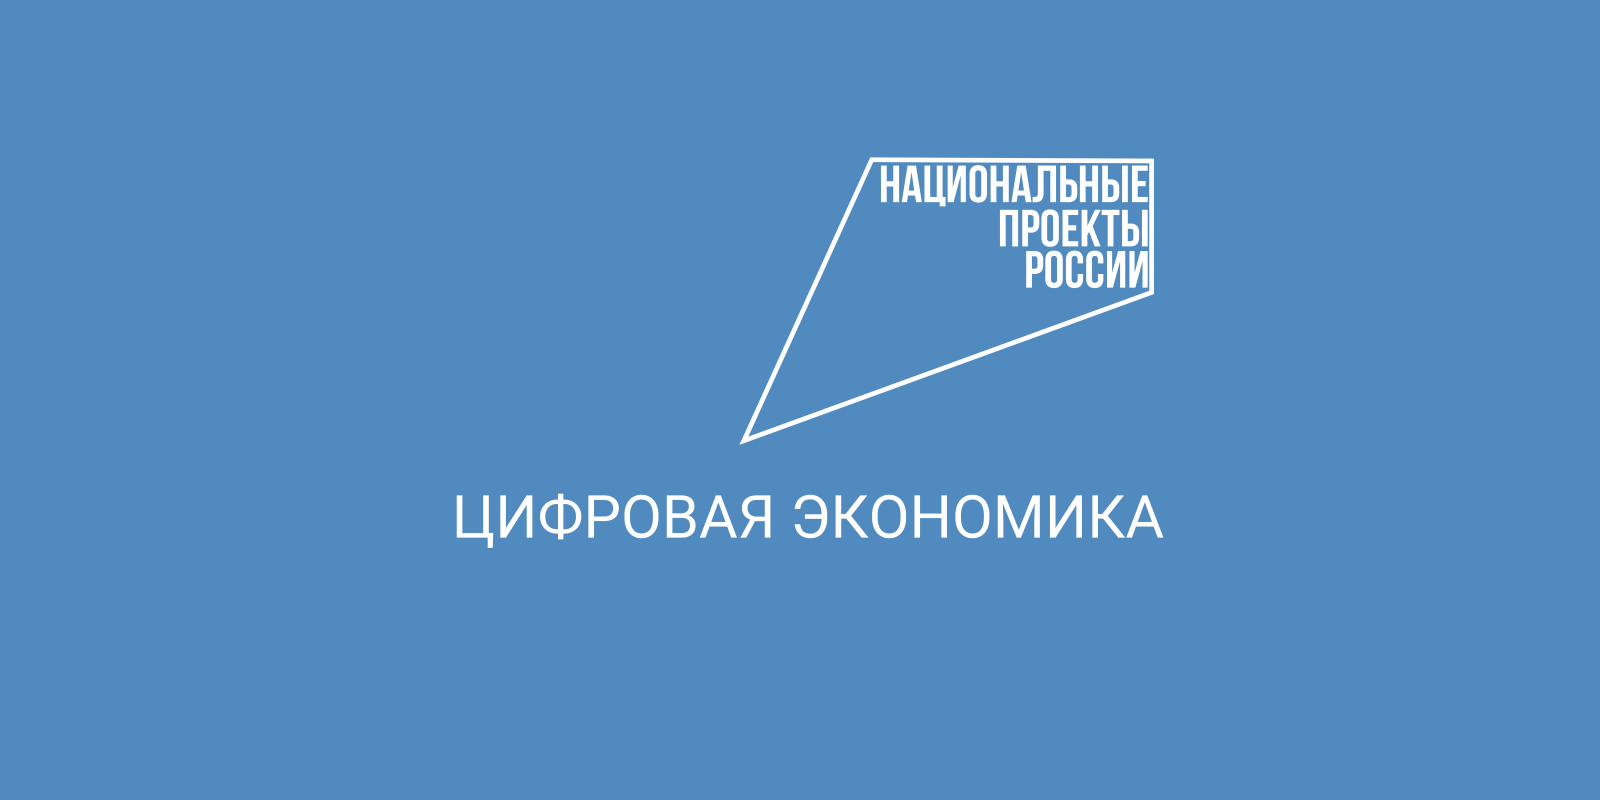 Более 2 700 заявлений подали абитуриенты на ИТ-направления подготовки в вузы Вологодской области.